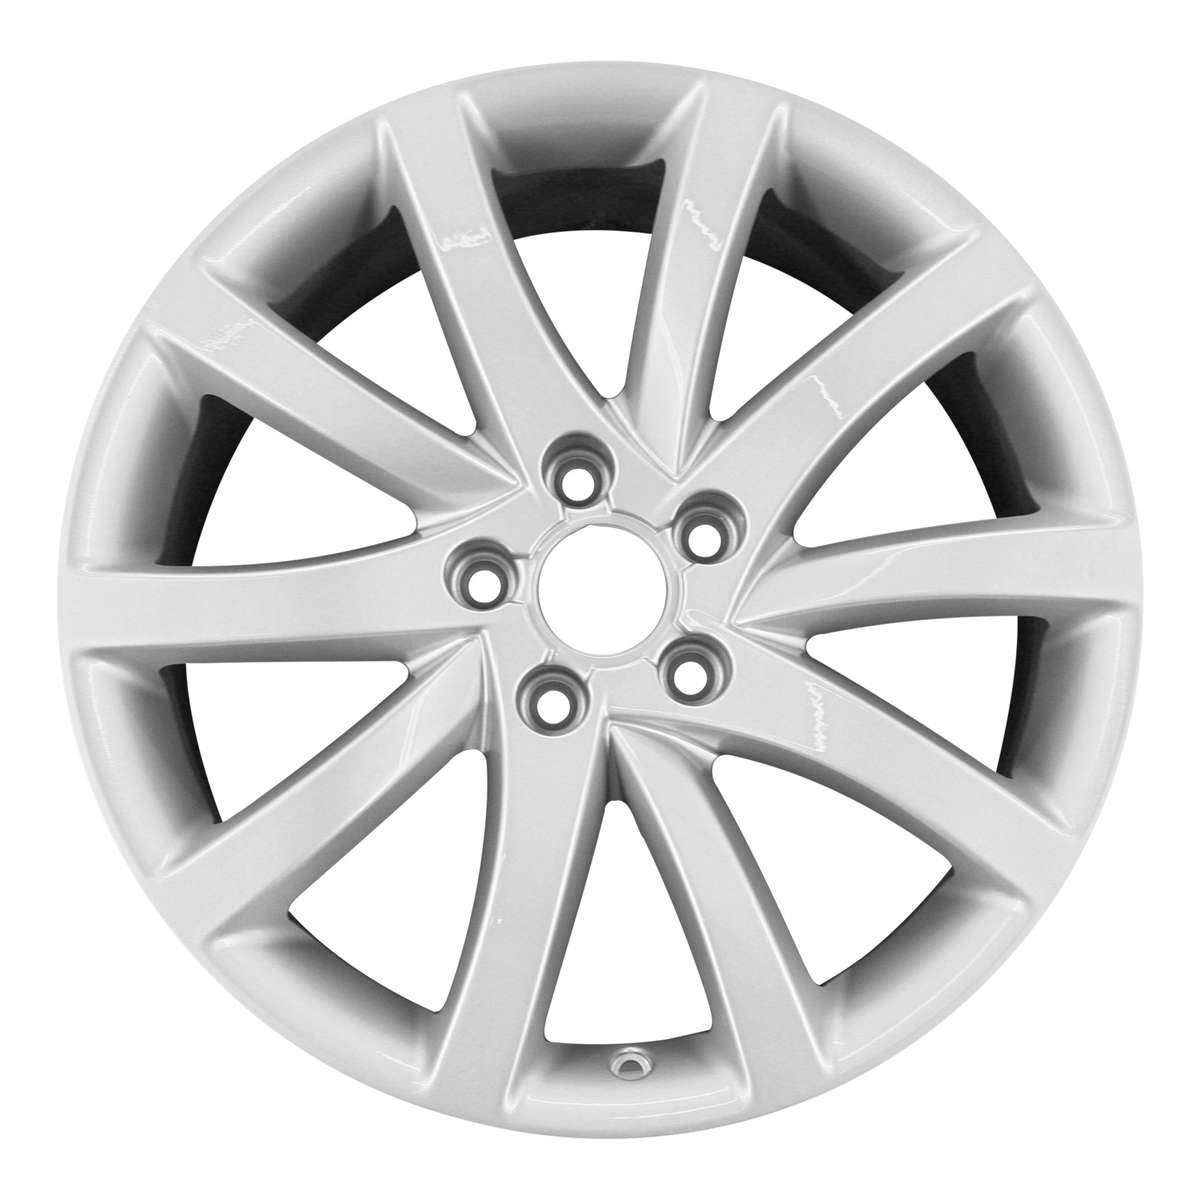 2013 Audi A4 18" OEM Wheel Rim W58911S